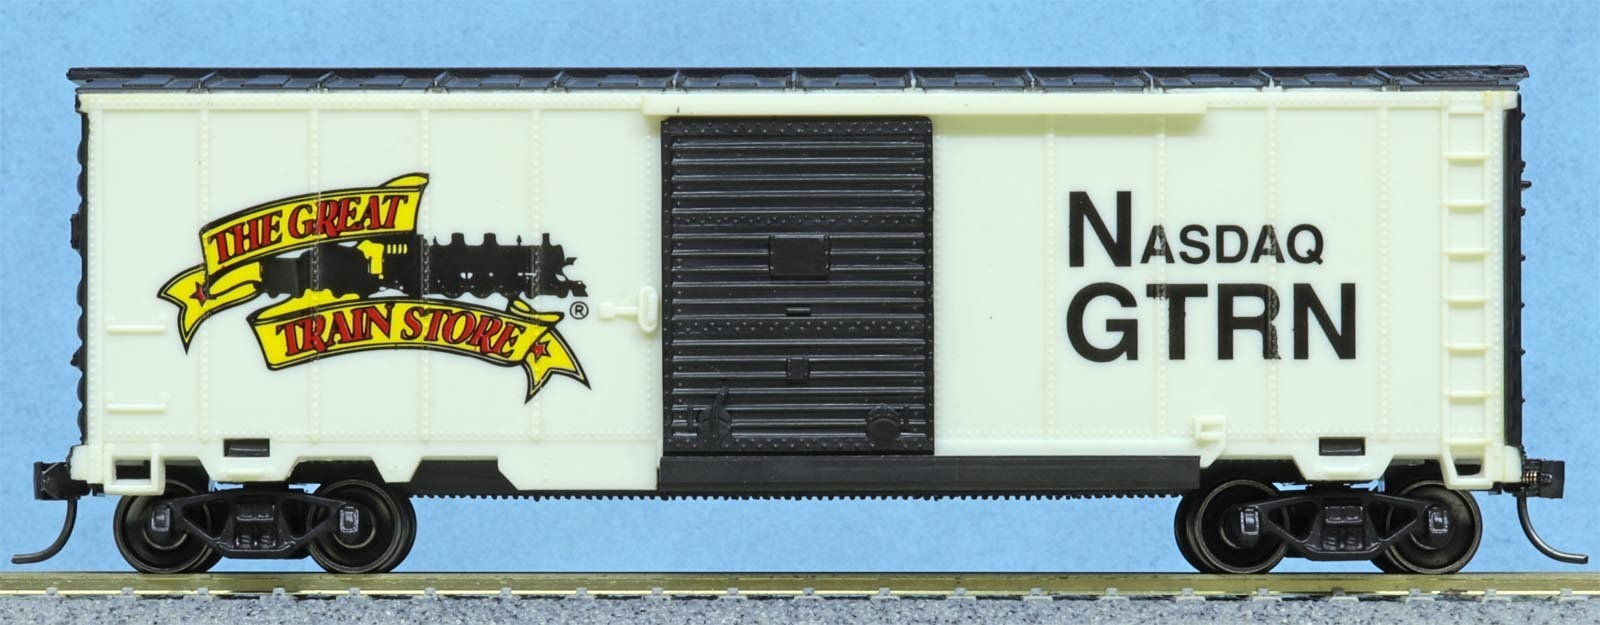 Great Train Store, Nasdaq, 40' boxcar: ガラクタ・ボックス